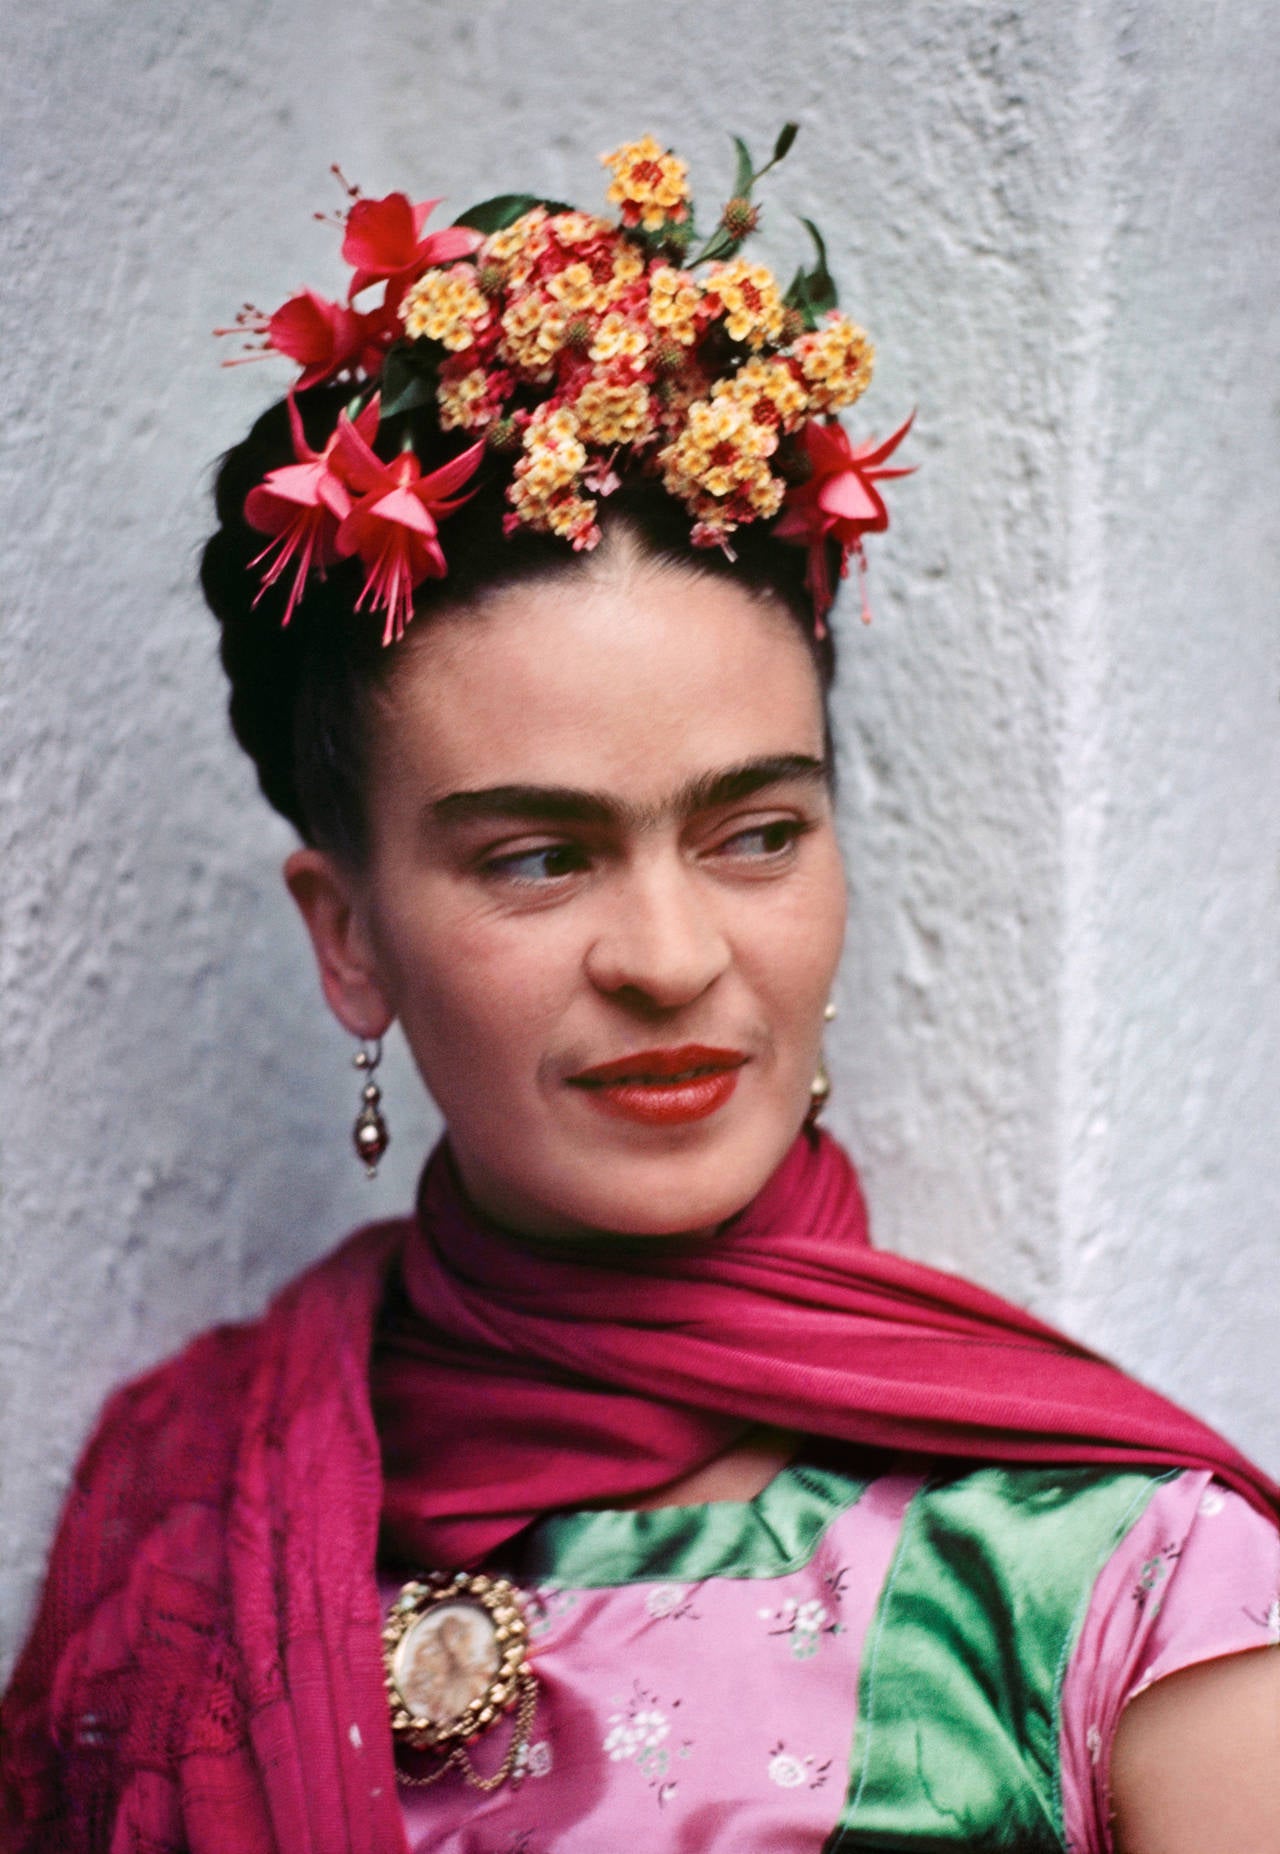 Frida in Pink and Green Blouse von Nickolas Muray ist ein farbenfrohes Porträt der mexikanischen Malerin Frida Kahlo. Frida trägt ein grün-rosafarbenes Hemd und einen magentafarbenen Schal um den Hals. Sie trägt gelbe und rosafarbene Blumen im Haar